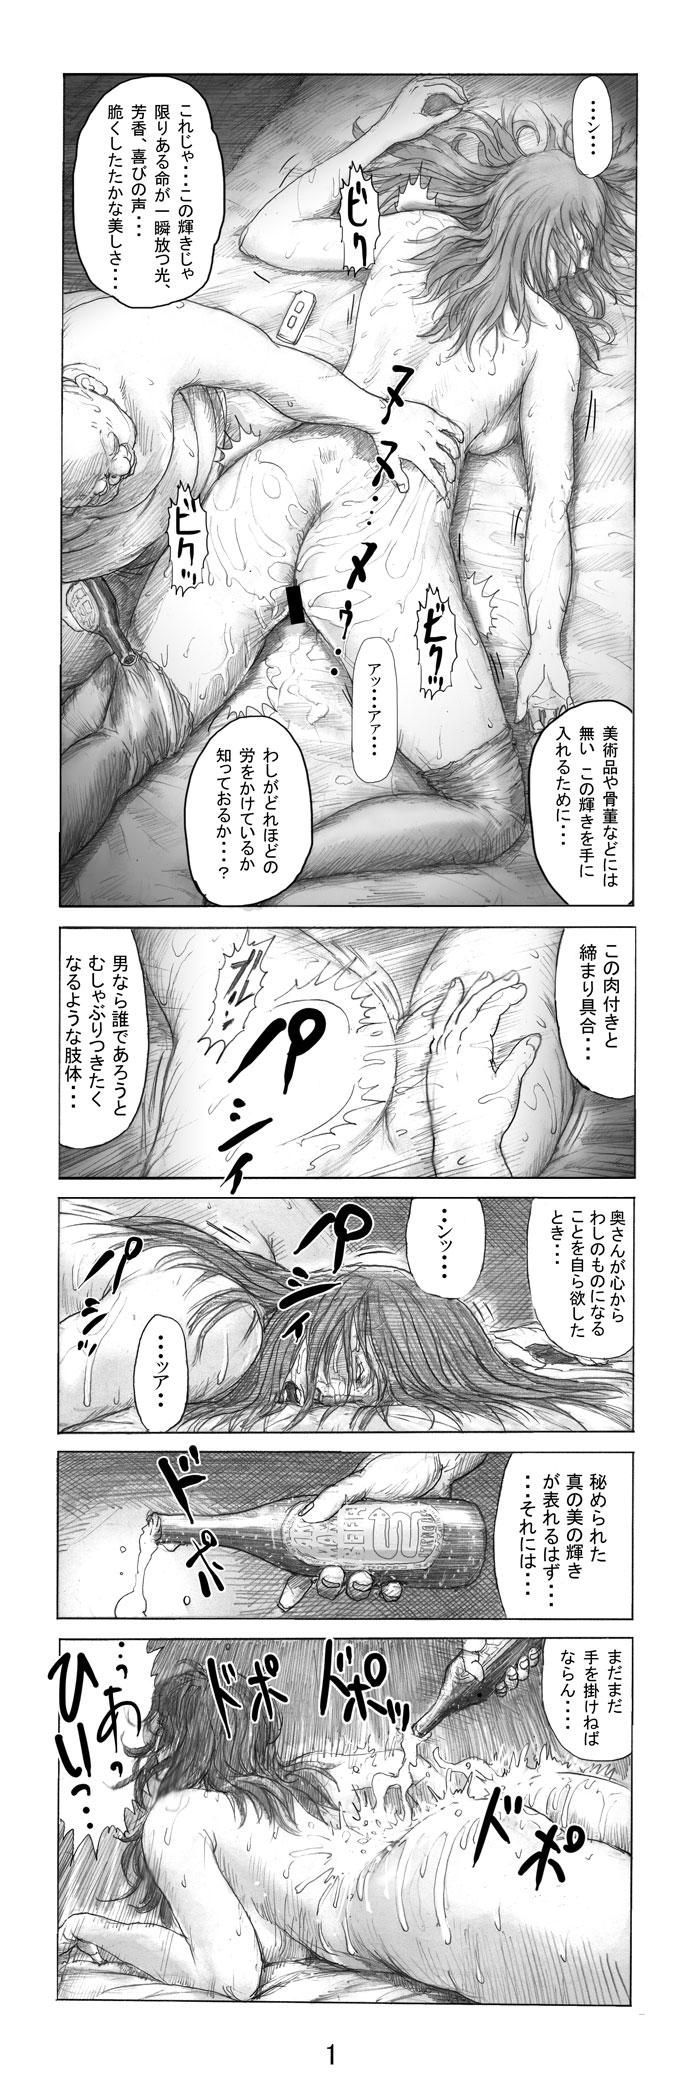 Oral Sex Utsukushii no Shingen Part 3 Duro - Page 2